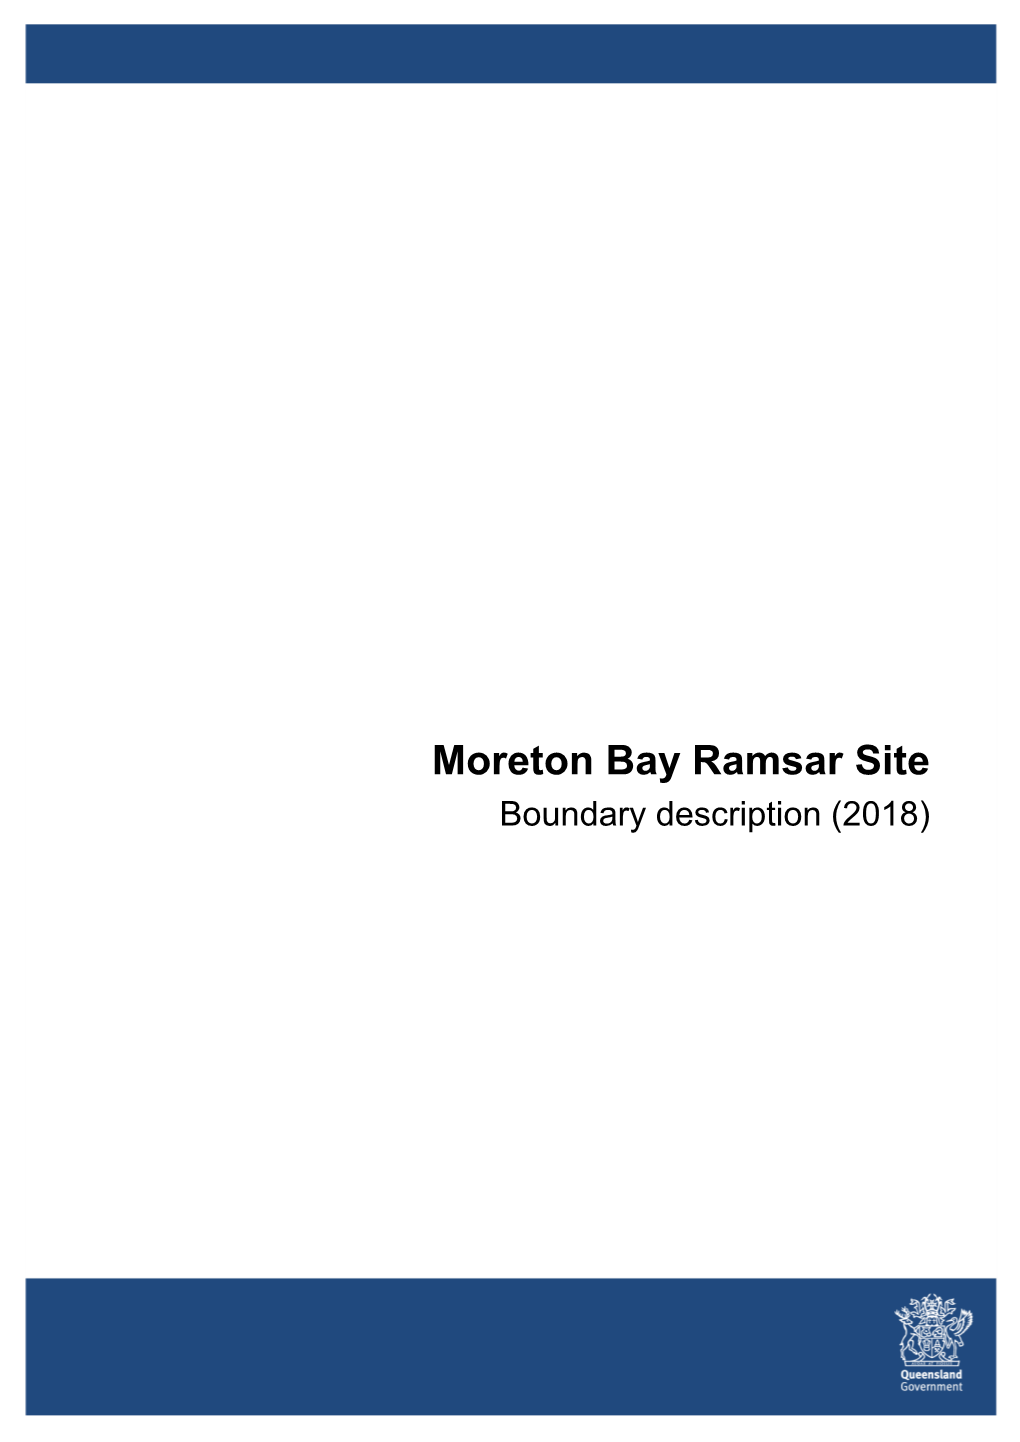 Moreton Bay Ramsar Site Boundary Description (2018)